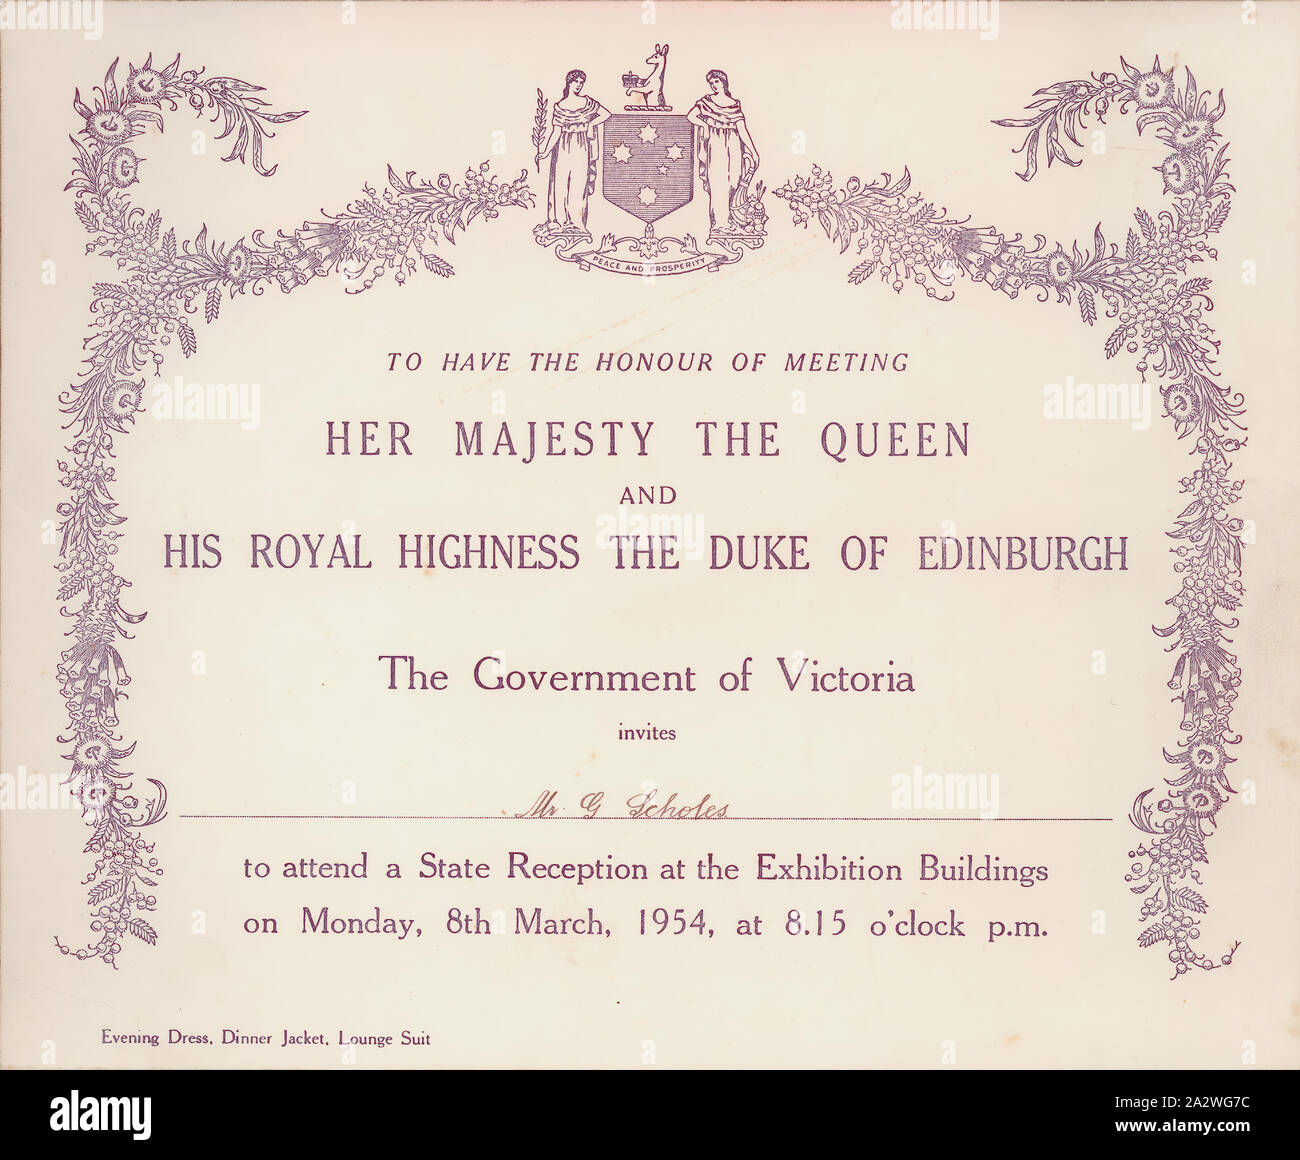 Invitation - la réception de l'État, la reine Elizabeth II et le duc d'Édimbourg, Melbourne, 8 mars 1954, l'invitation adressée à M. G Scholes d'assister à une soirée de réception de l'État pour Sa Majesté la Reine Elizabeth II et Son Altesse Royale le duc d'Édimbourg à l'exposition le lundi 8 mars 1954. La princesse Elizabeth est en route vers l'Australie en 1952, lorsqu'elle entendu des nouvelles que son père, le roi George VI, était mort. Son voyage avait été réduit, mais lorsqu'elle a rendu à l'Australie deux ans plus tard, elle était maintenant la reine Elizabeth Banque D'Images